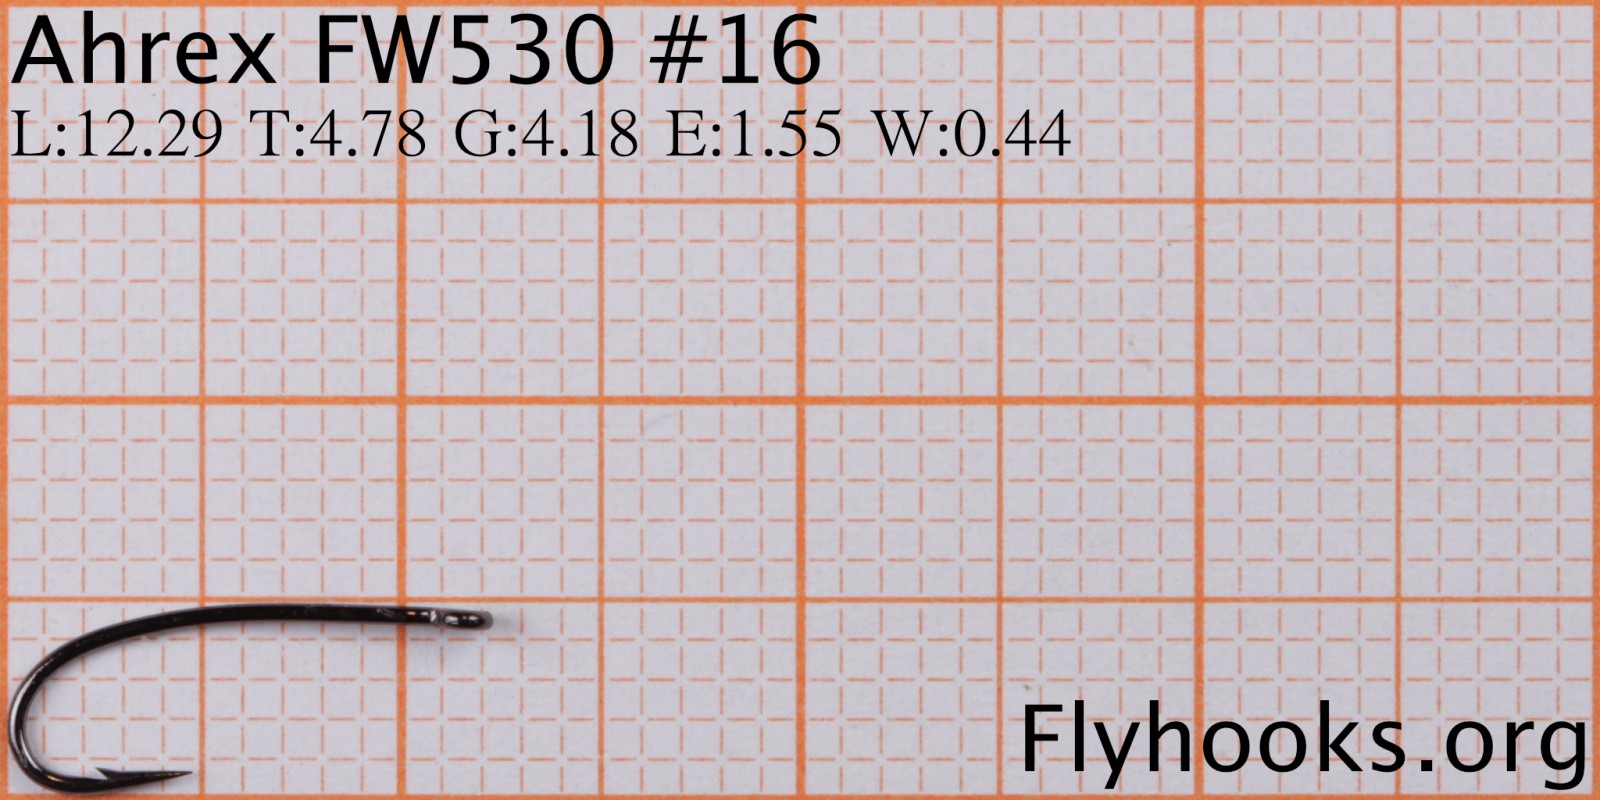 FW 530 - Sedge/Caddis